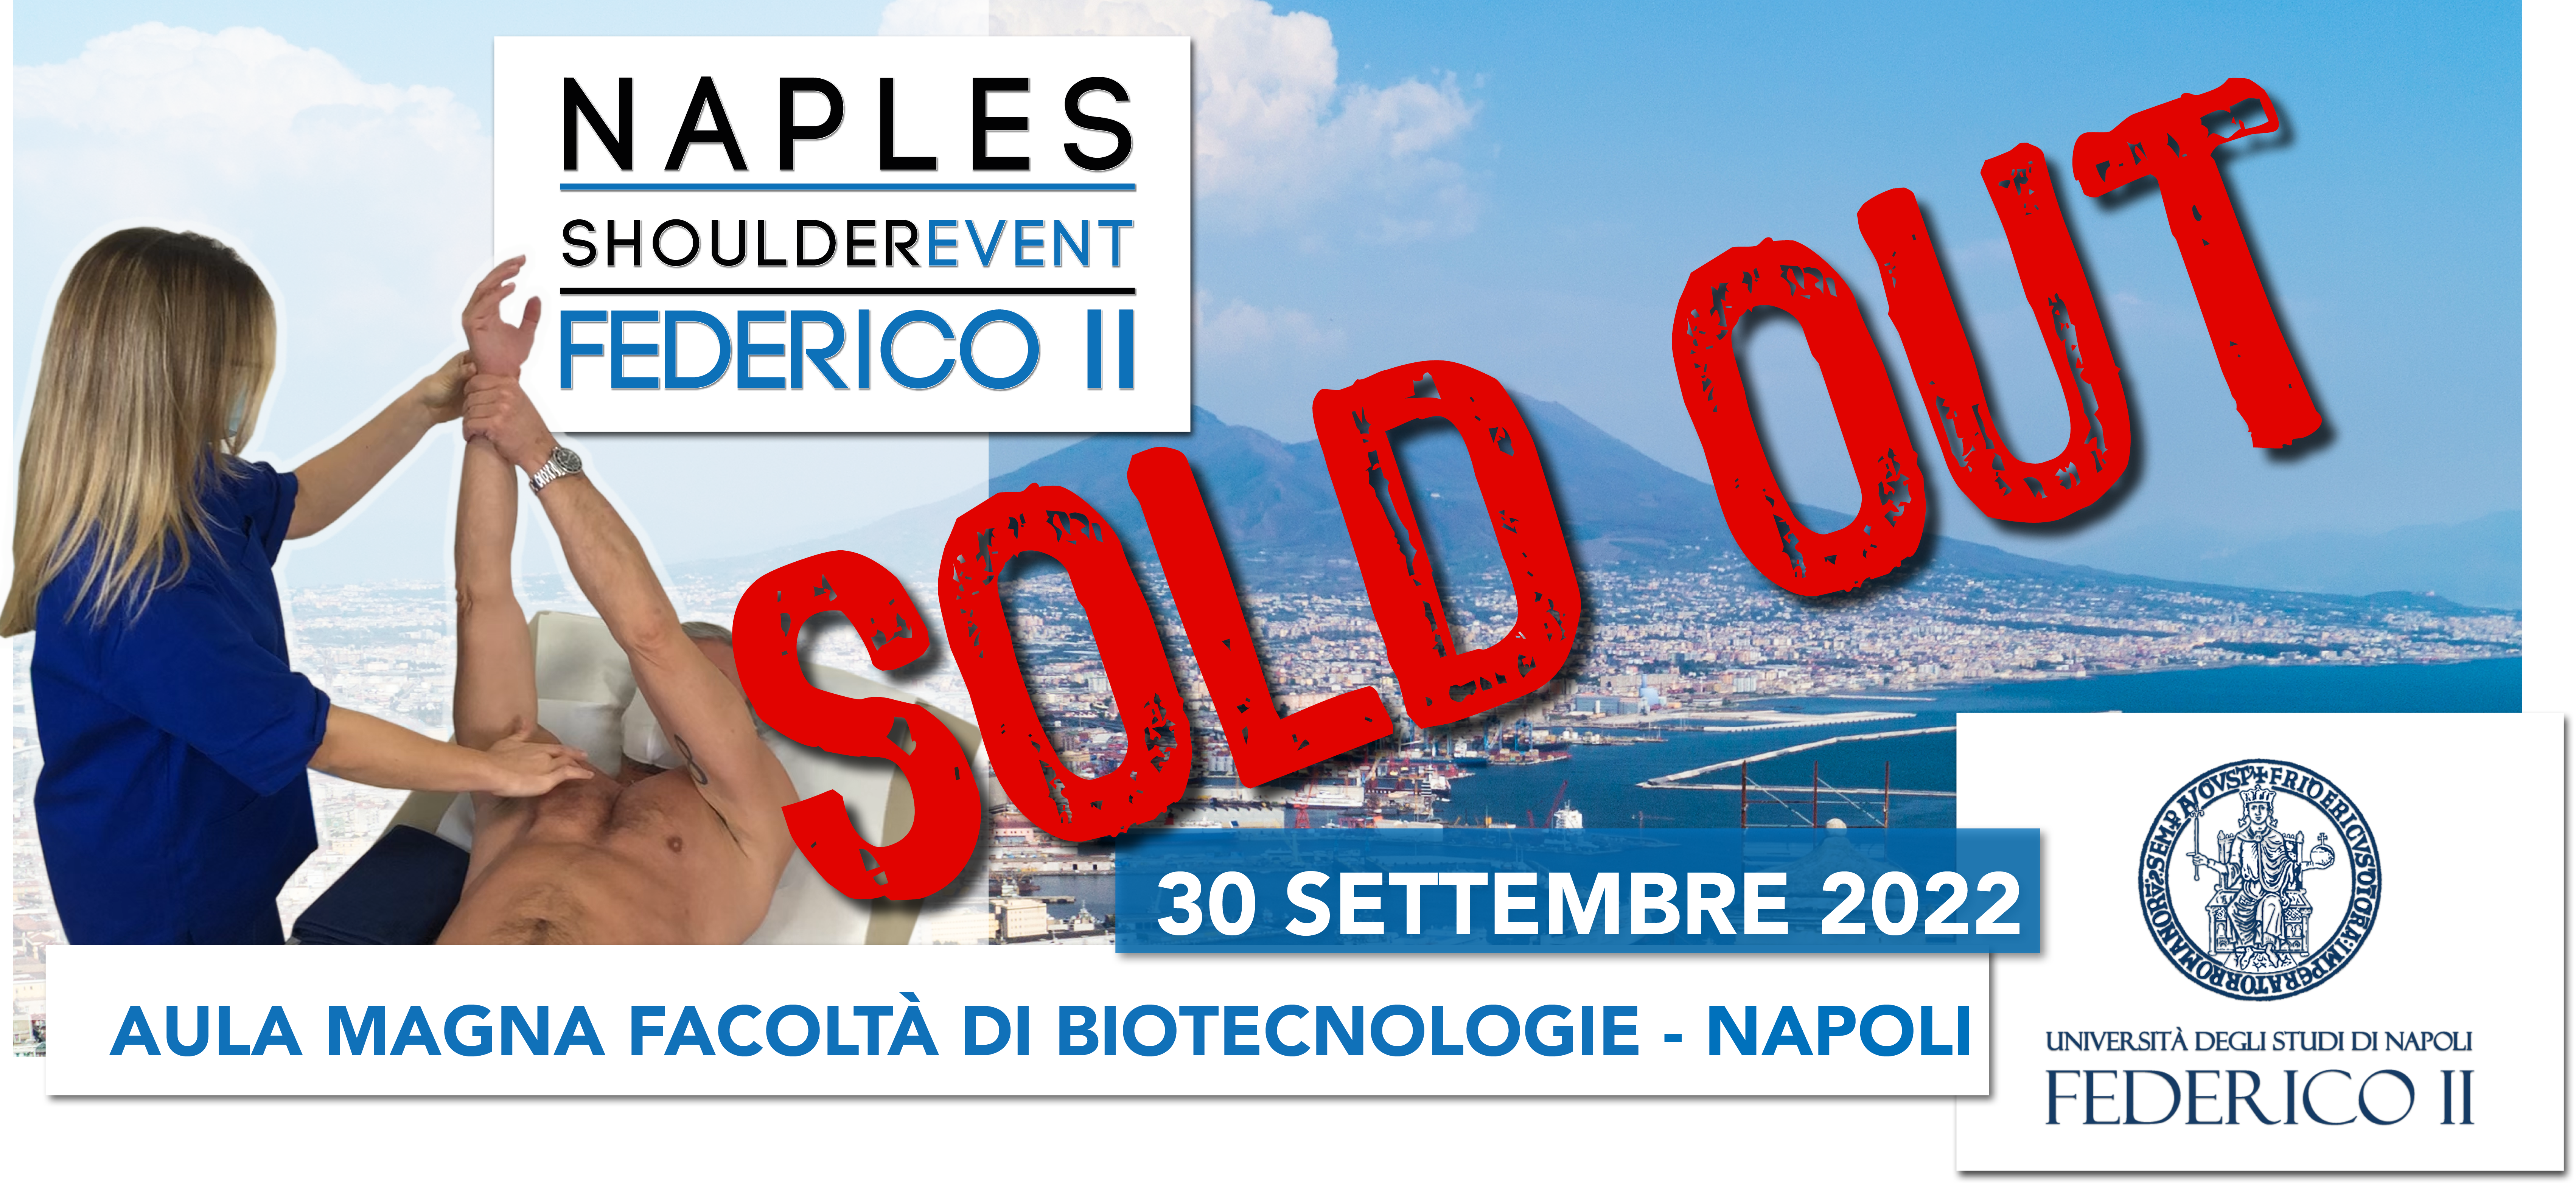 Naples shoulder event 2022 sold out